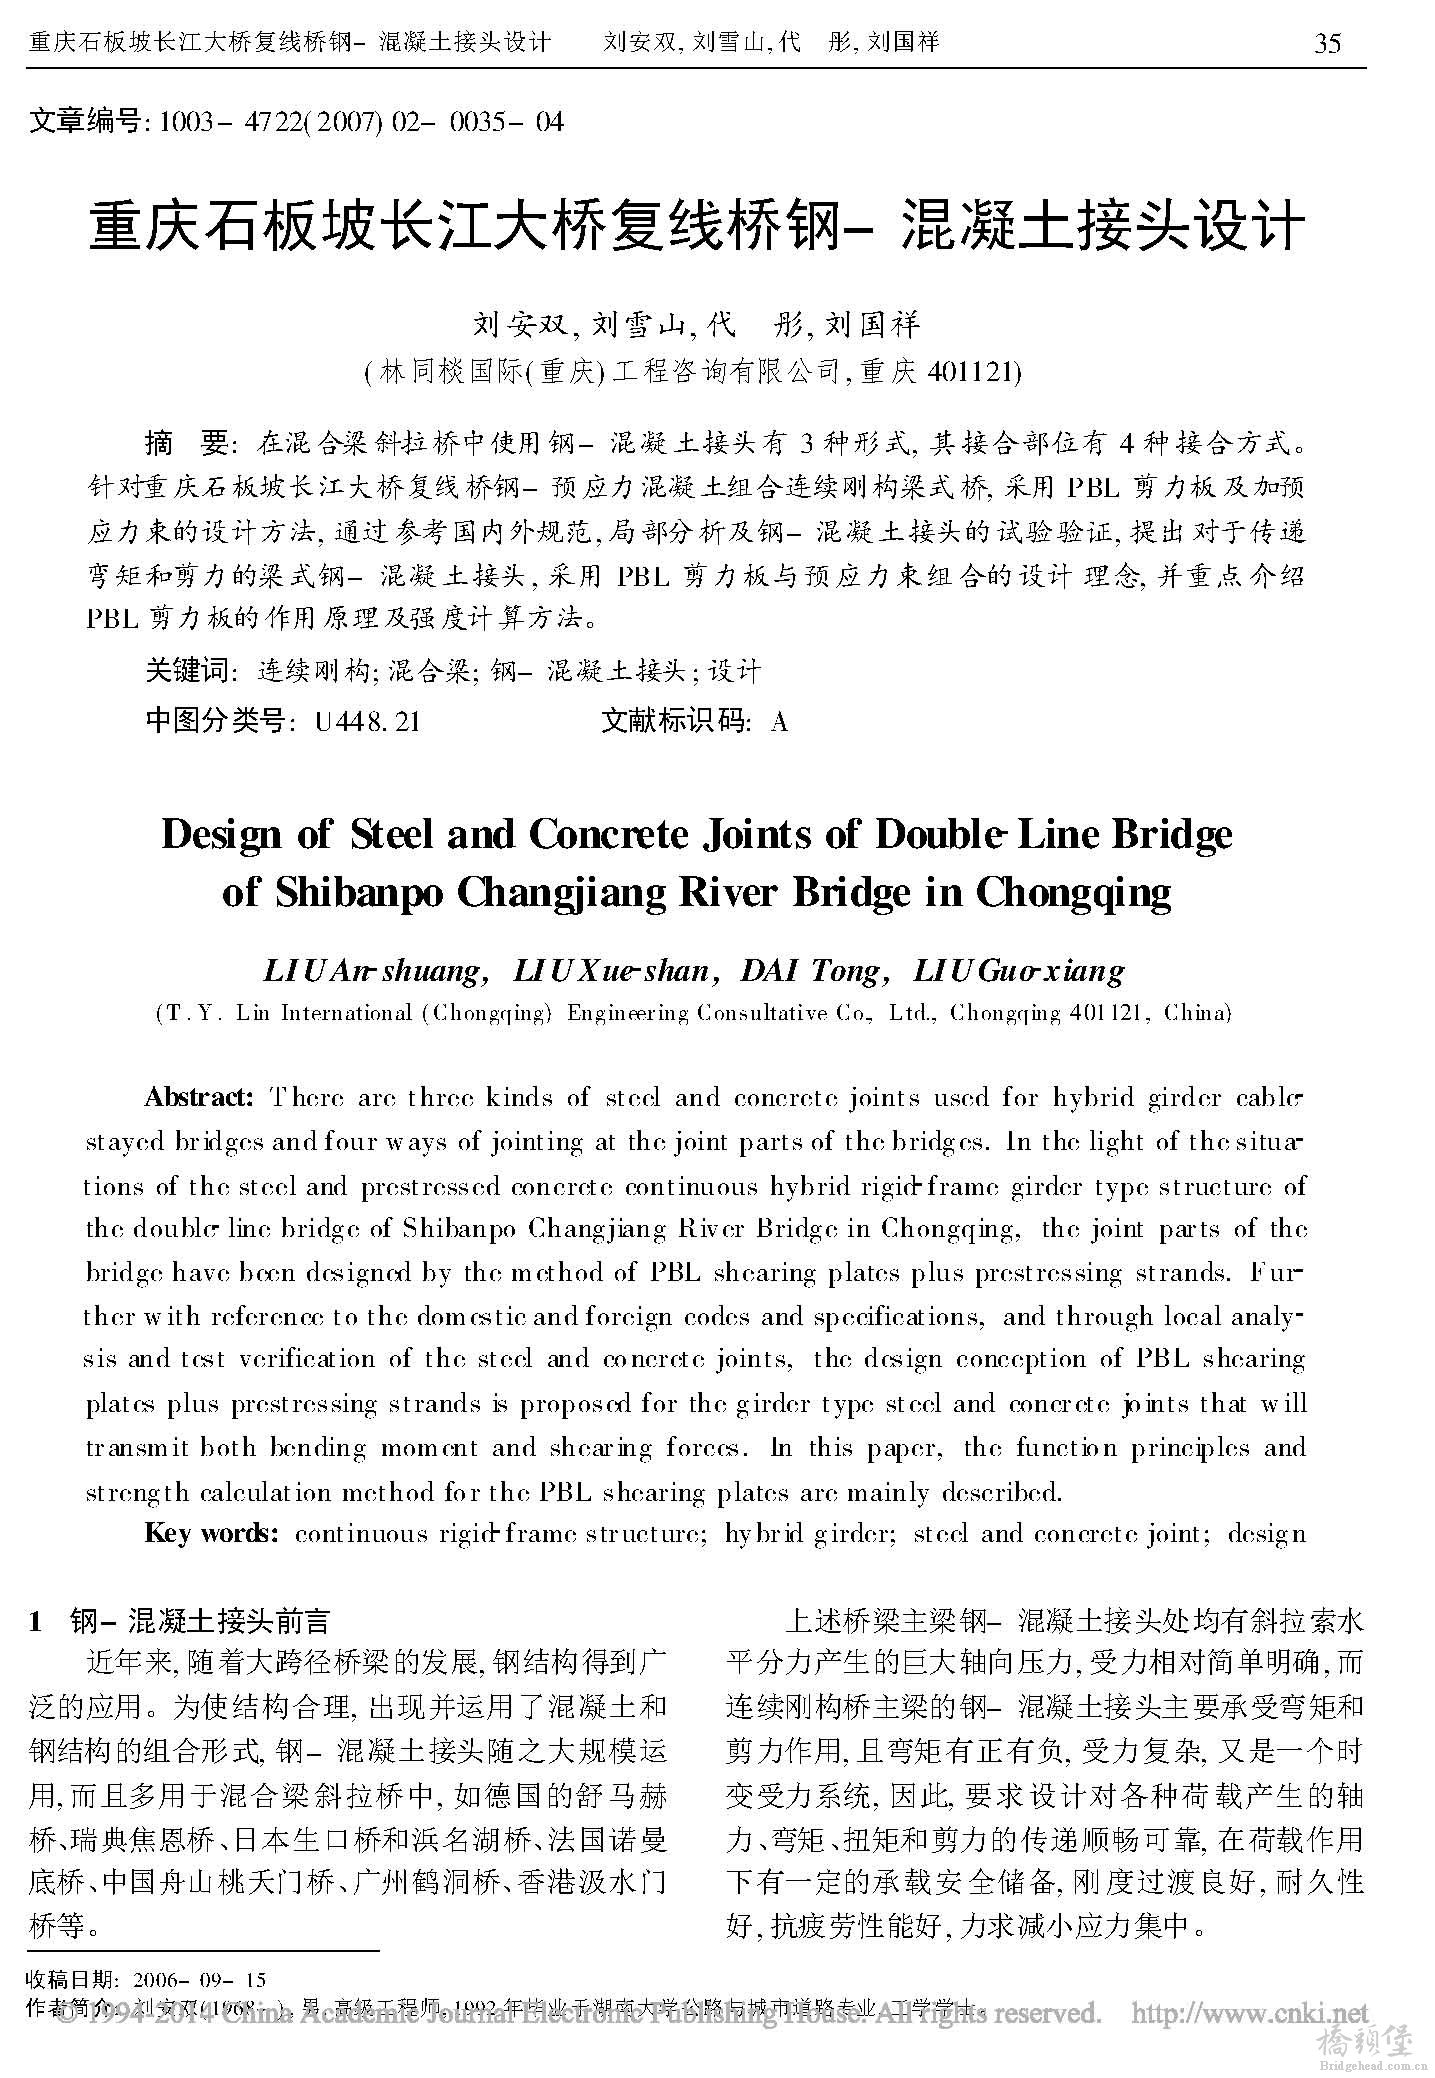 重庆石板坡长江大桥复线桥钢_混凝土接头设计_页面_1.jpg